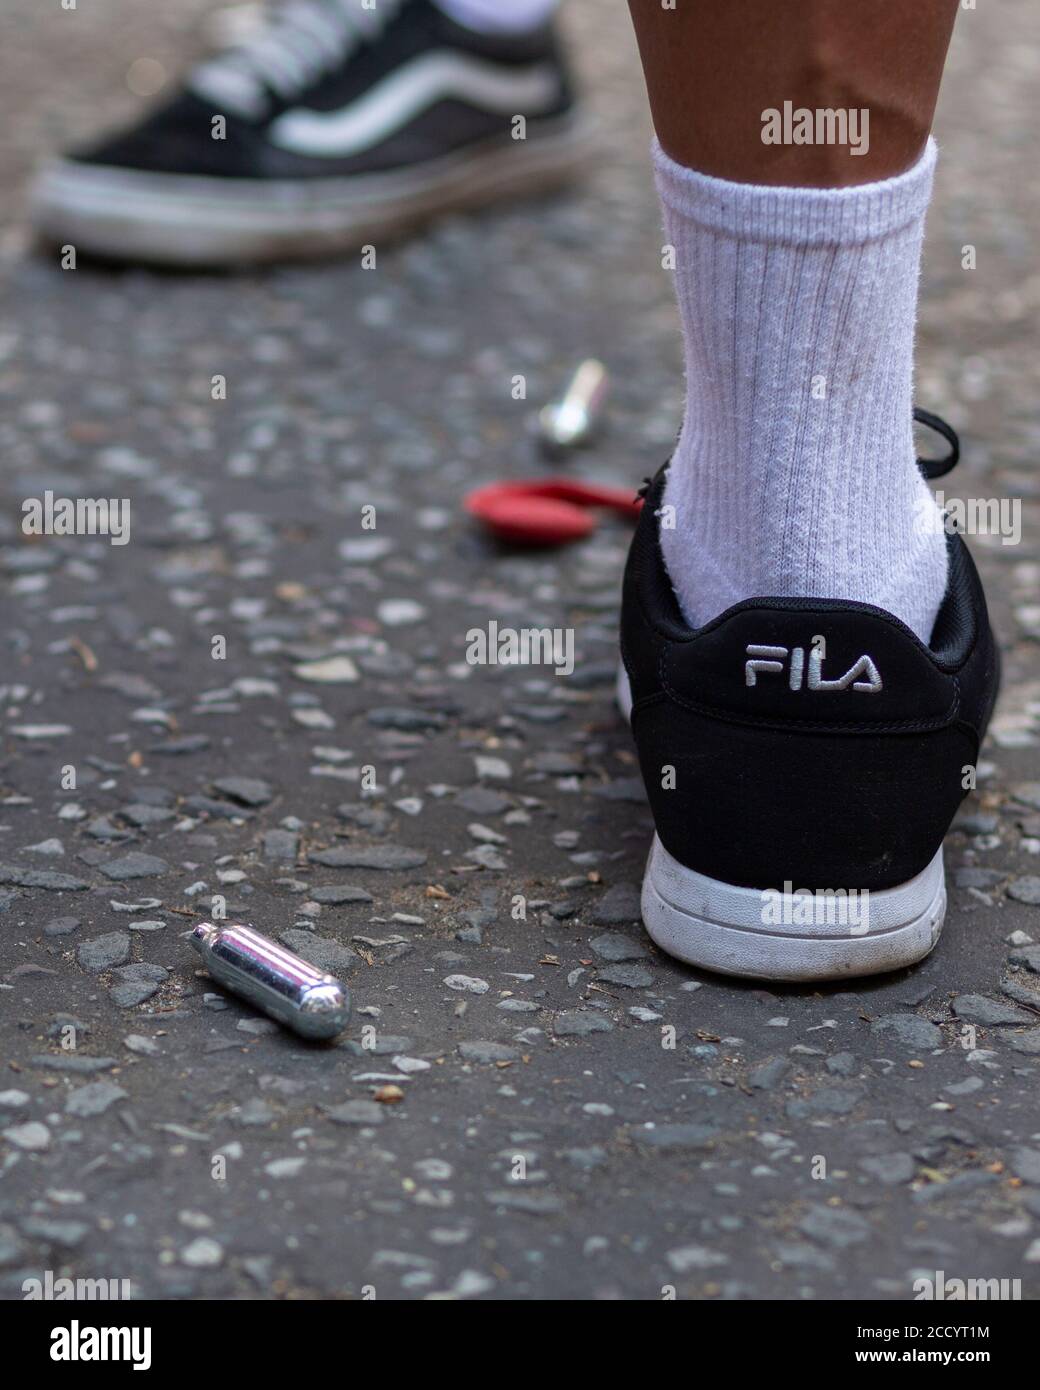 Vista de los pies de un pueblo junto a los botes descartados de óxido nitroso en una carretera durante Notting Hill Carnival, Londres, 2019 Foto de stock